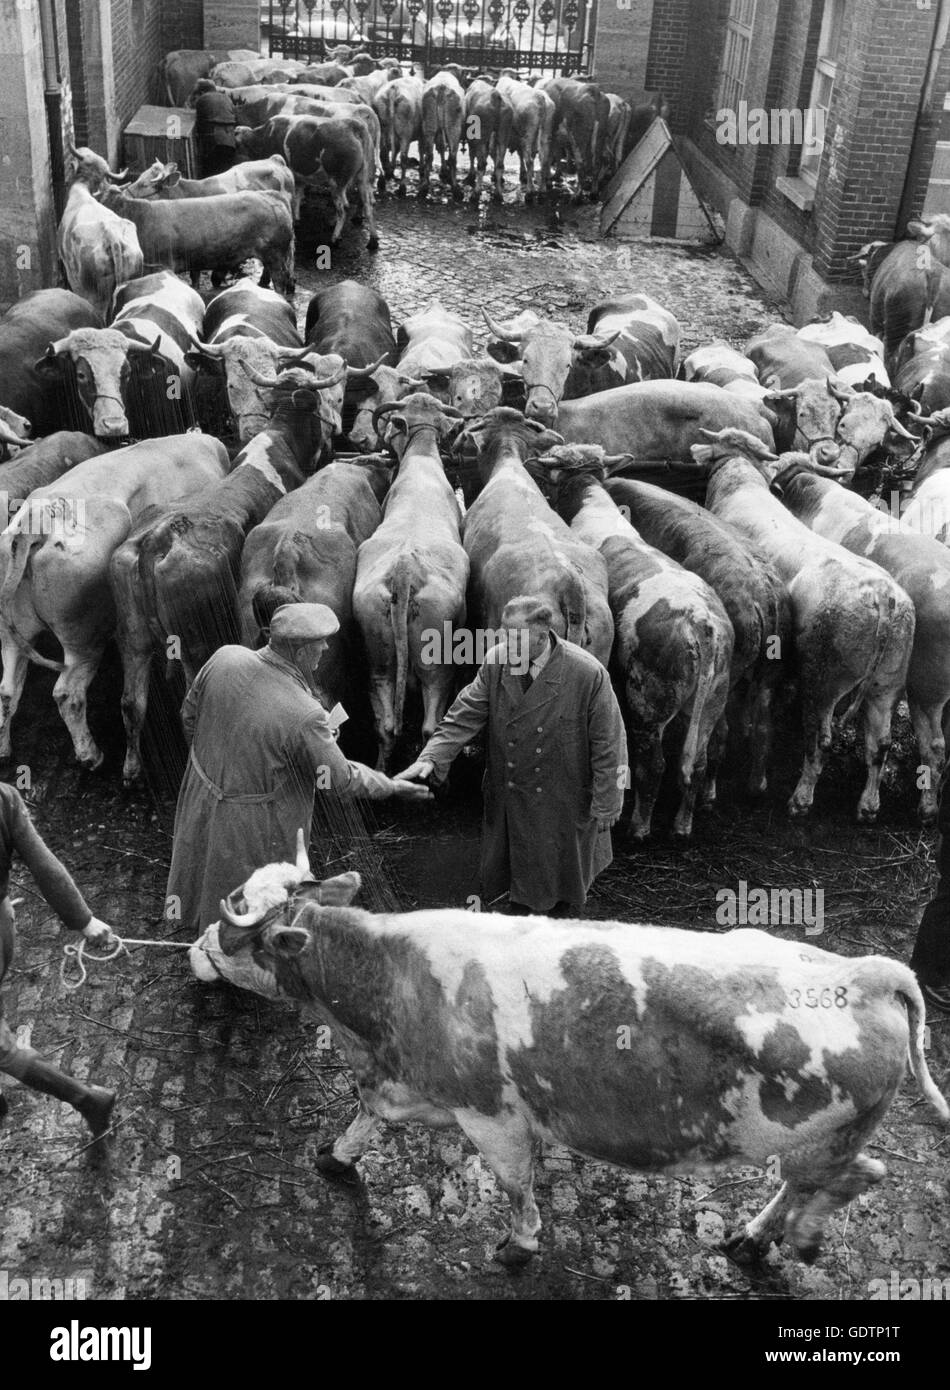 Cattle trade in Munich Stock Photo